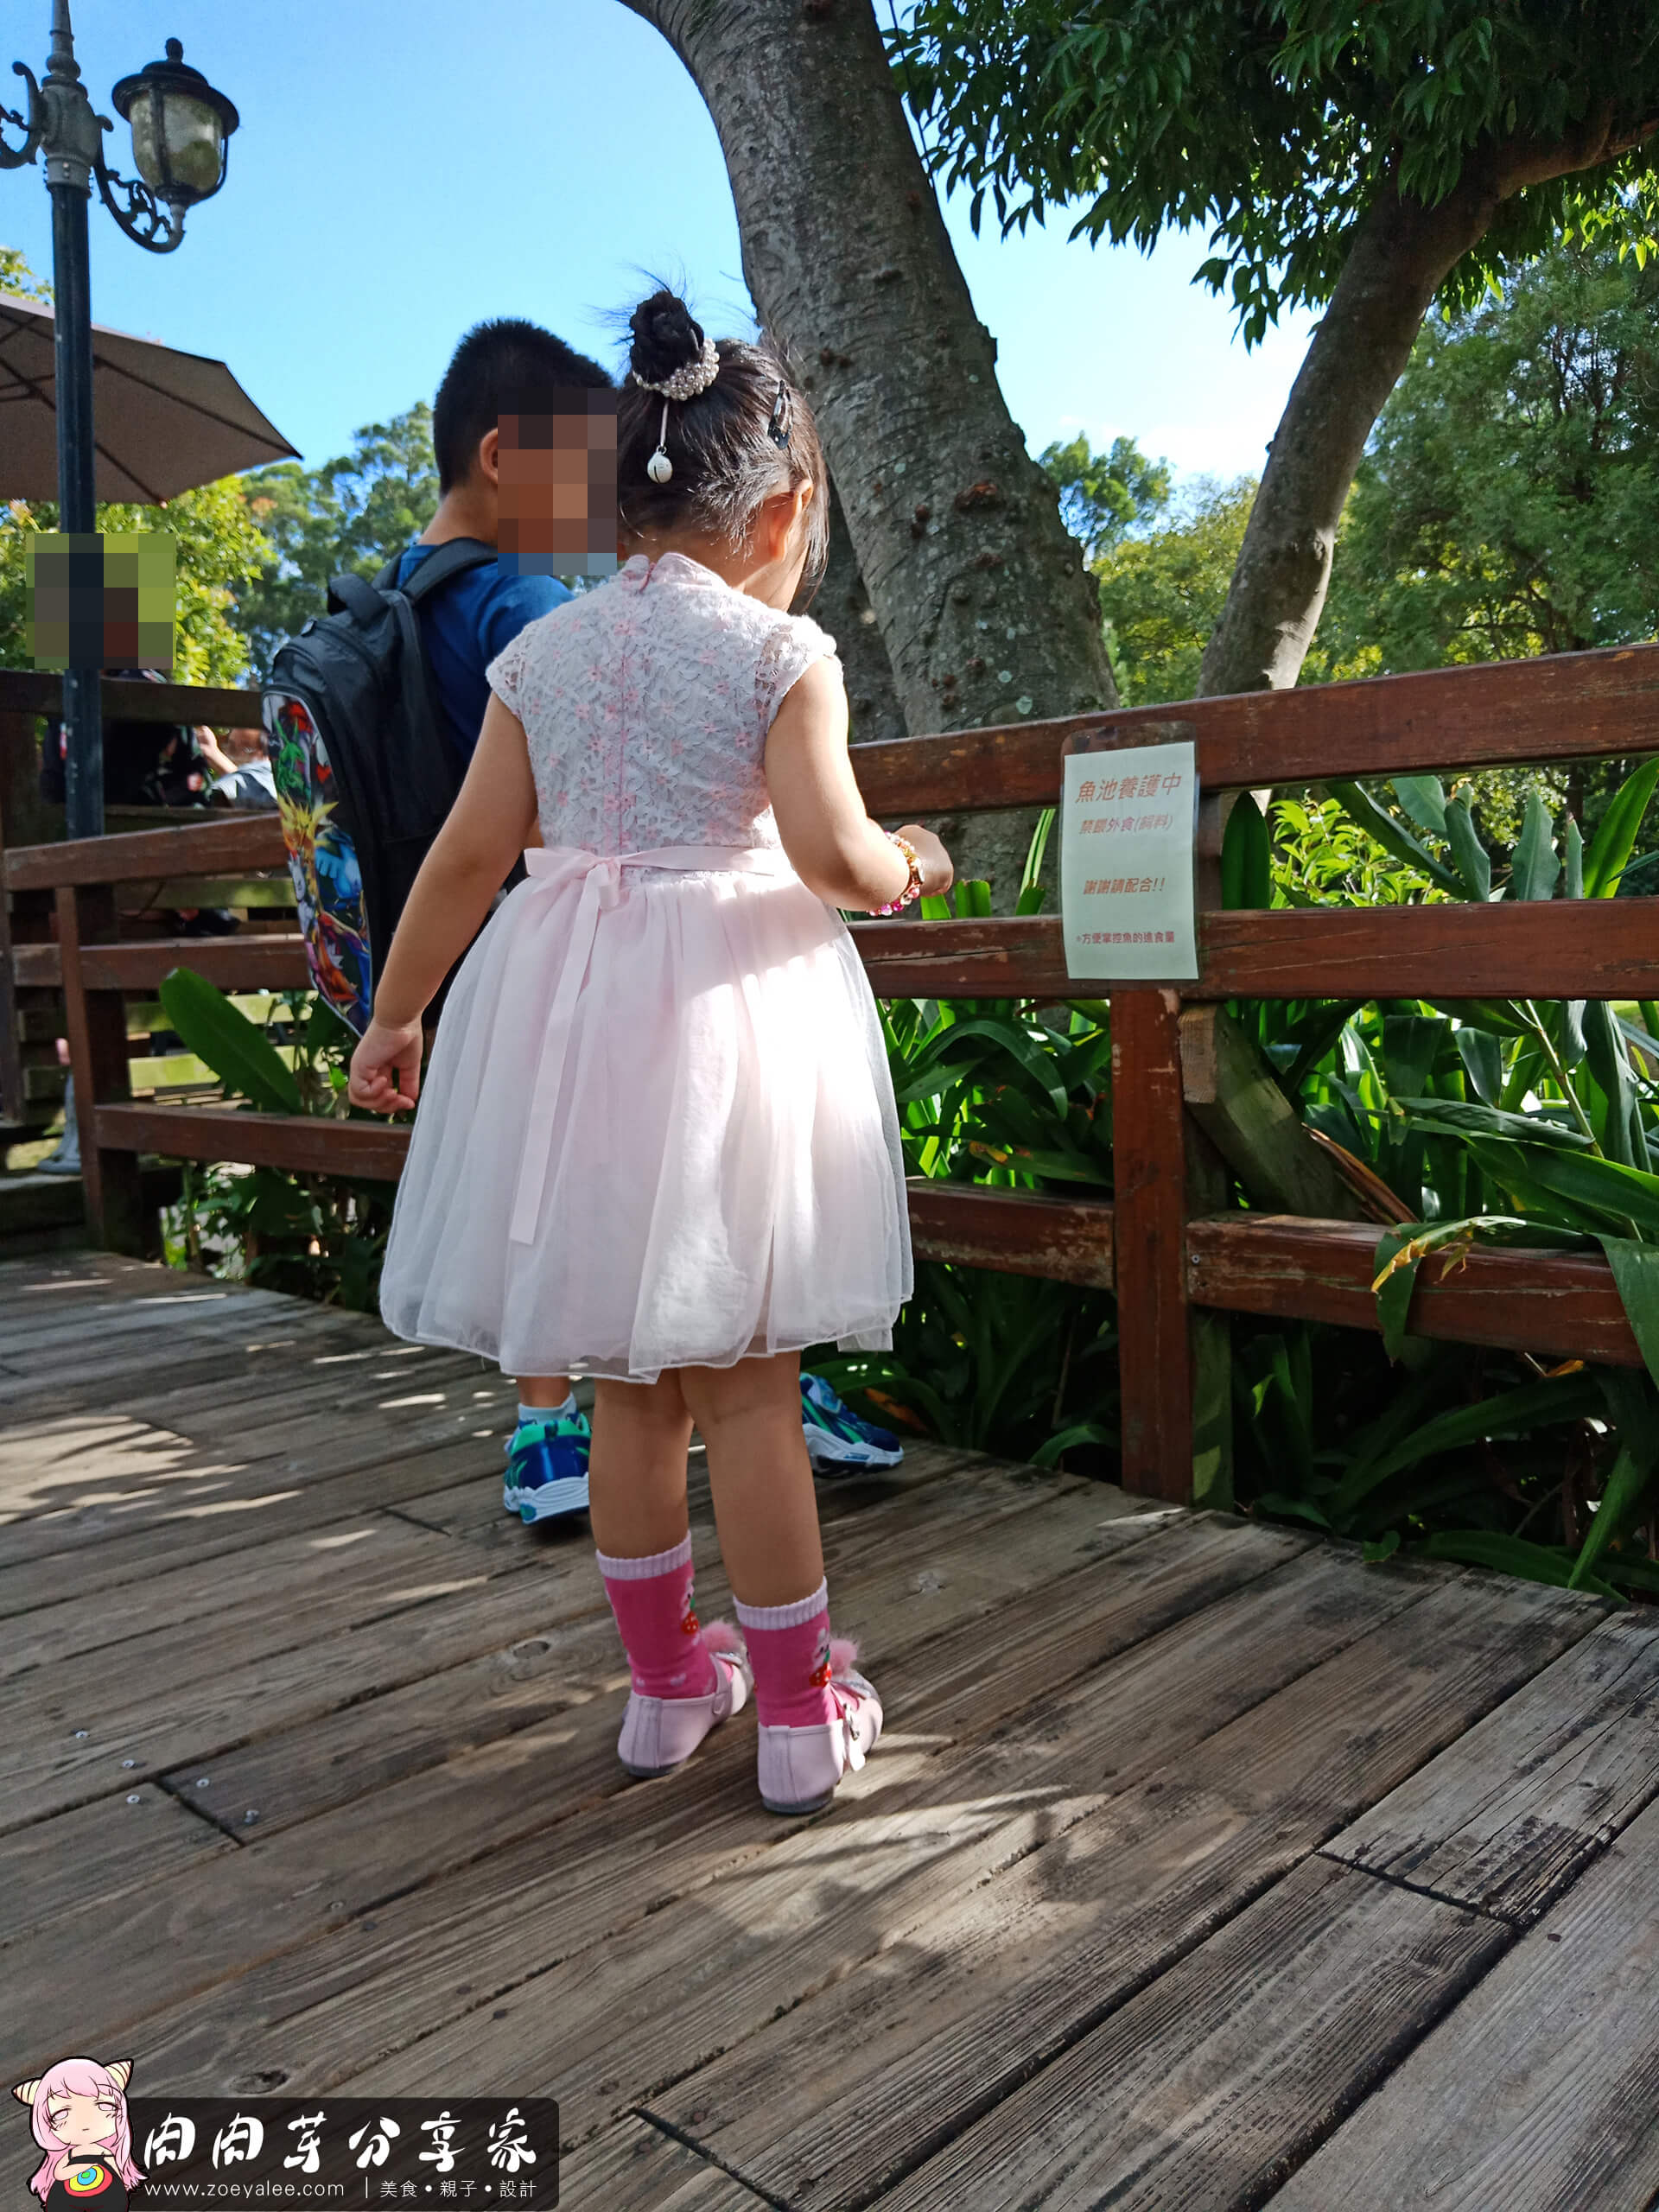 壹等賞景觀茶園餐廳穿著中國風新式旗袍的小女孩與穿著休閒裝小男孩還正在嬉戲